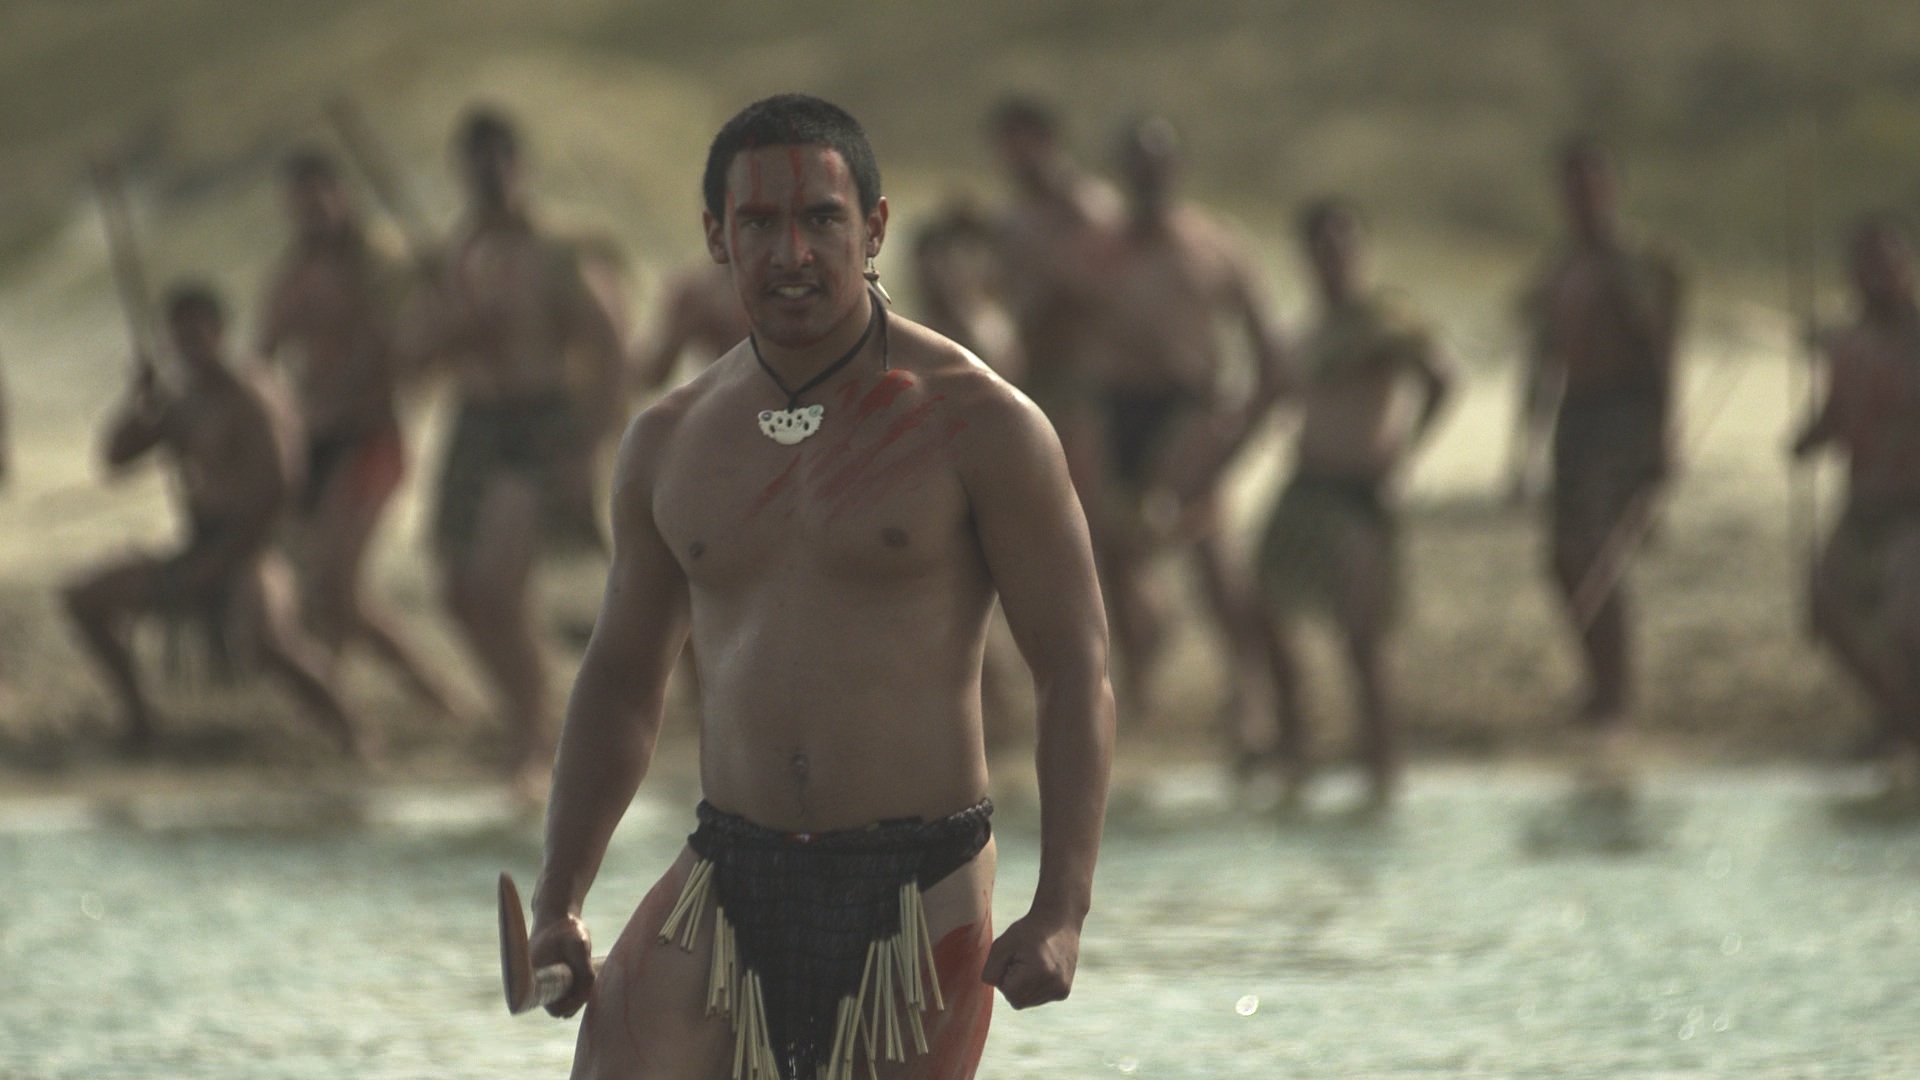 Le film "Tupaia", fruit d'une collaboration entre Ma'ohi et Maori, a obtenu le 3e prix spécial du jury.